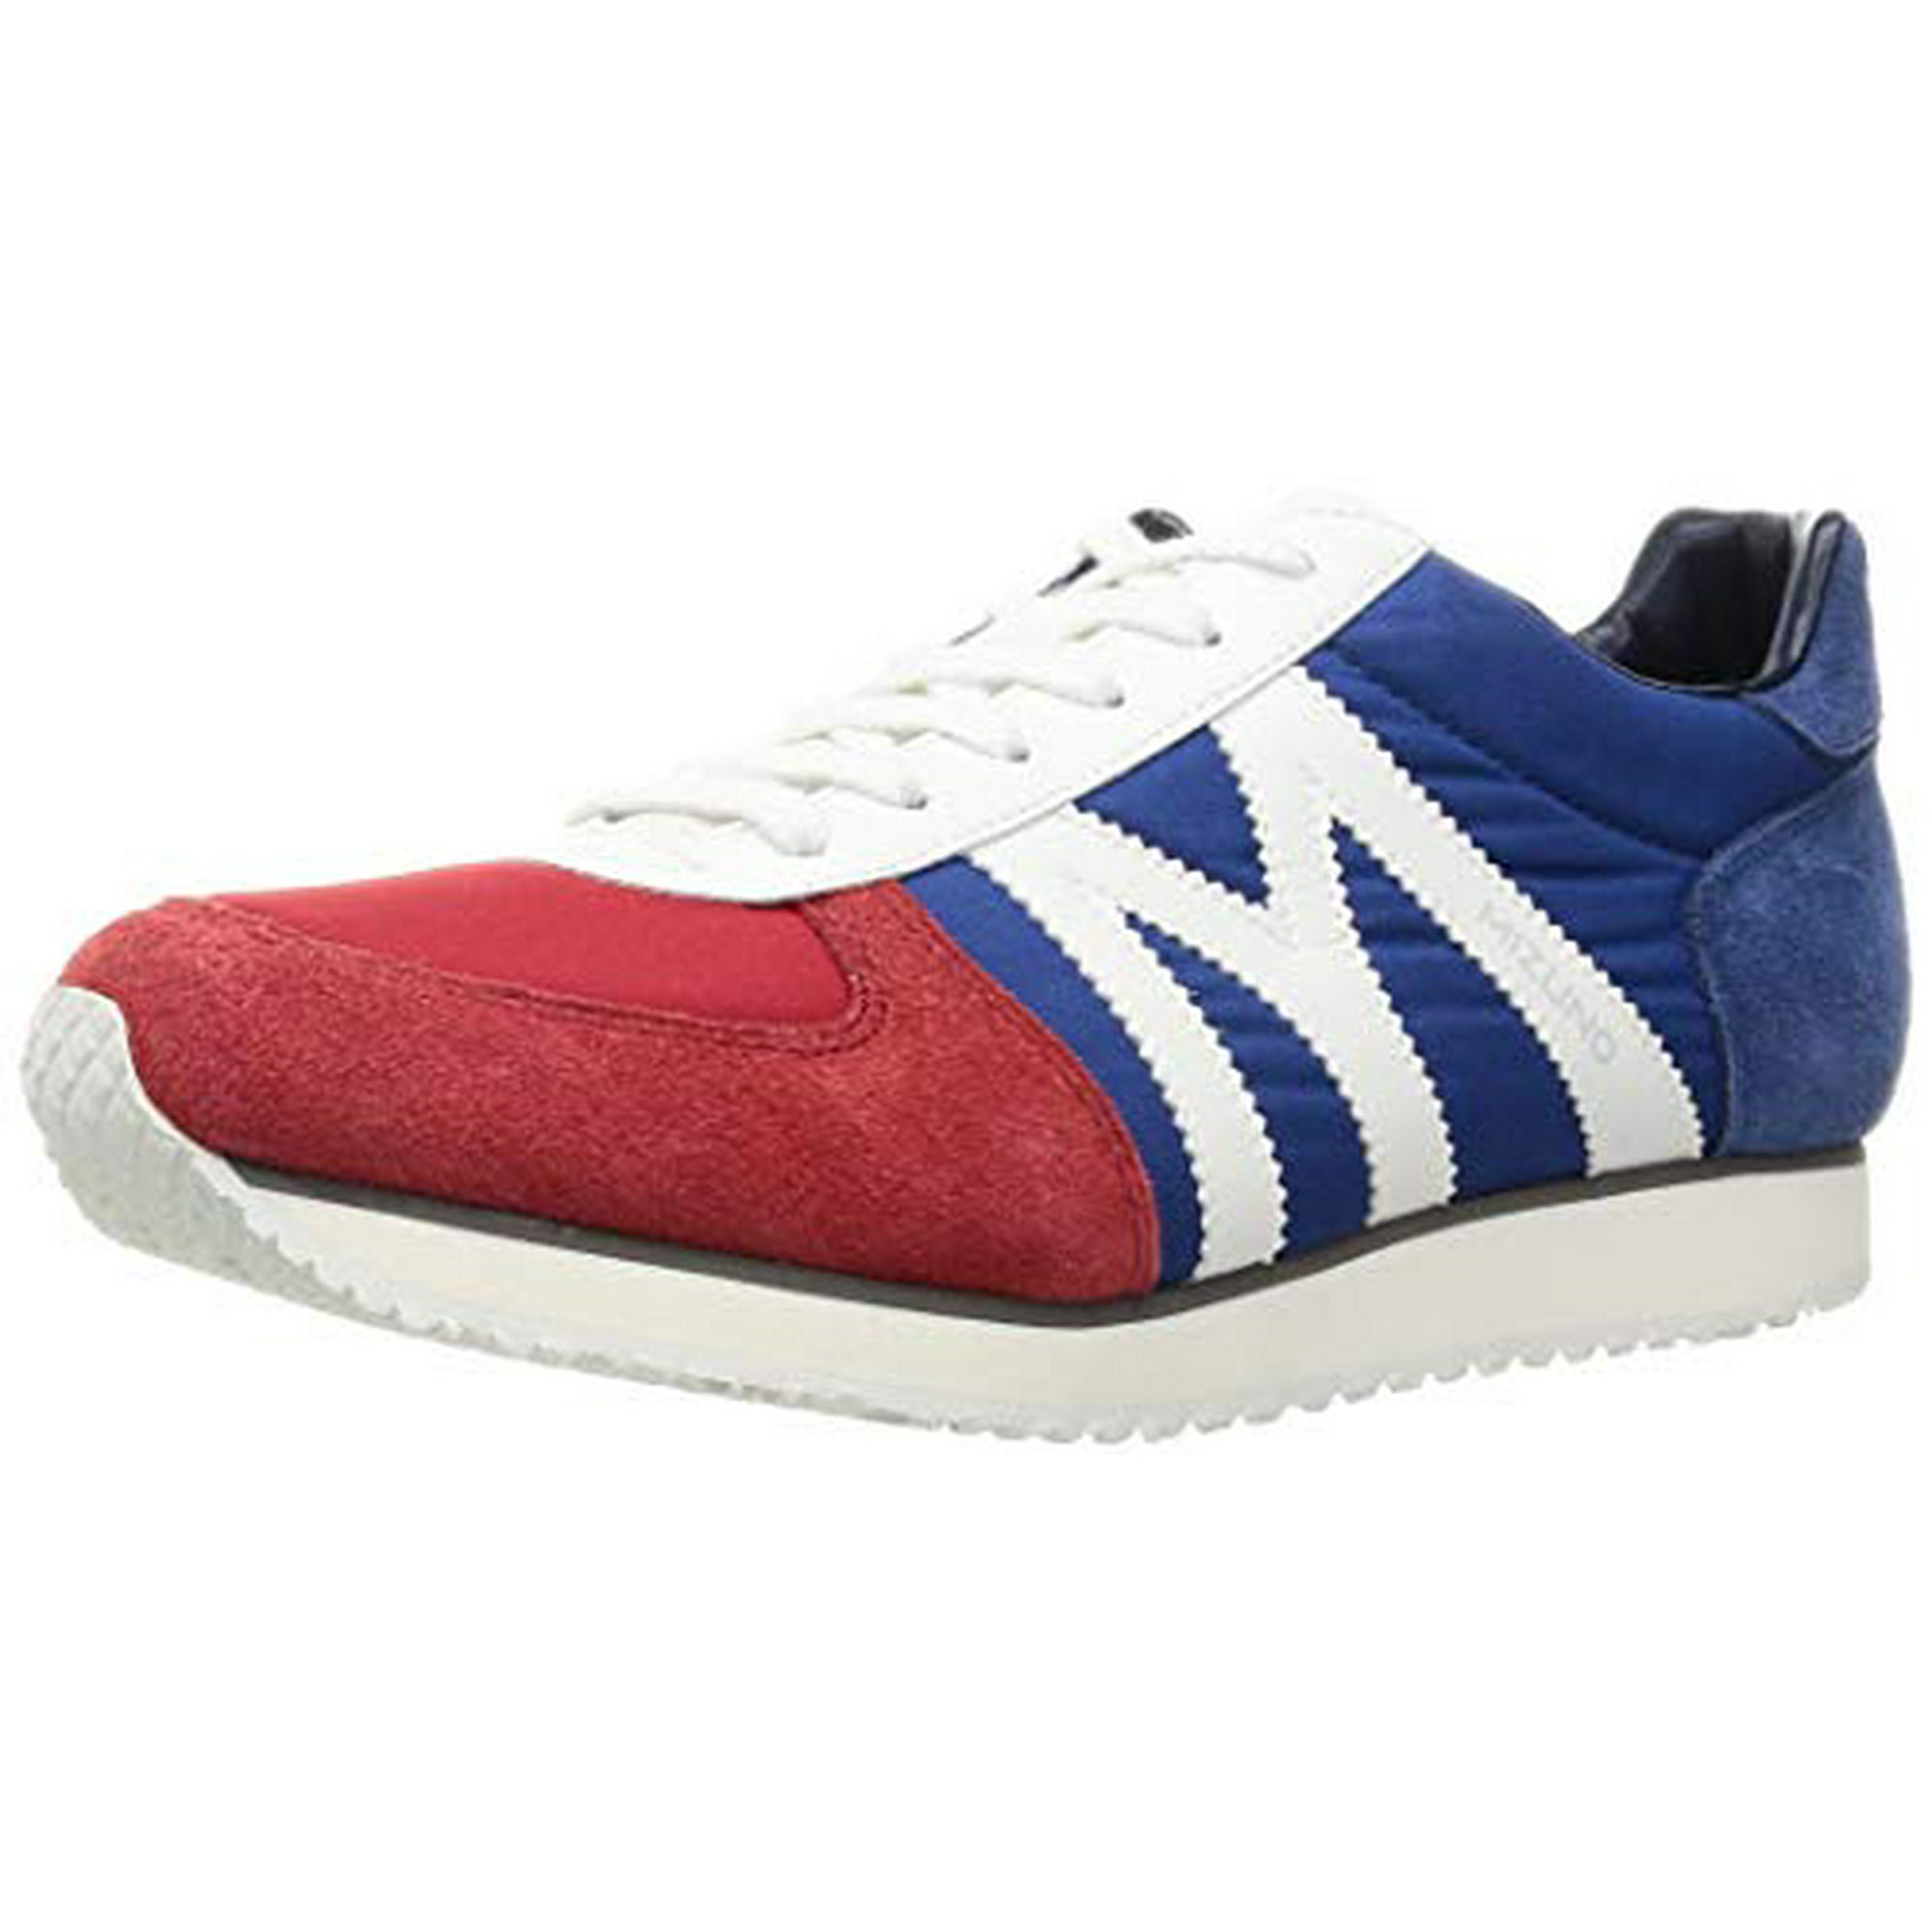 Mizuno] Sneakers MIZUNO MR1 Red x White x Blue 24.0 cm 2E